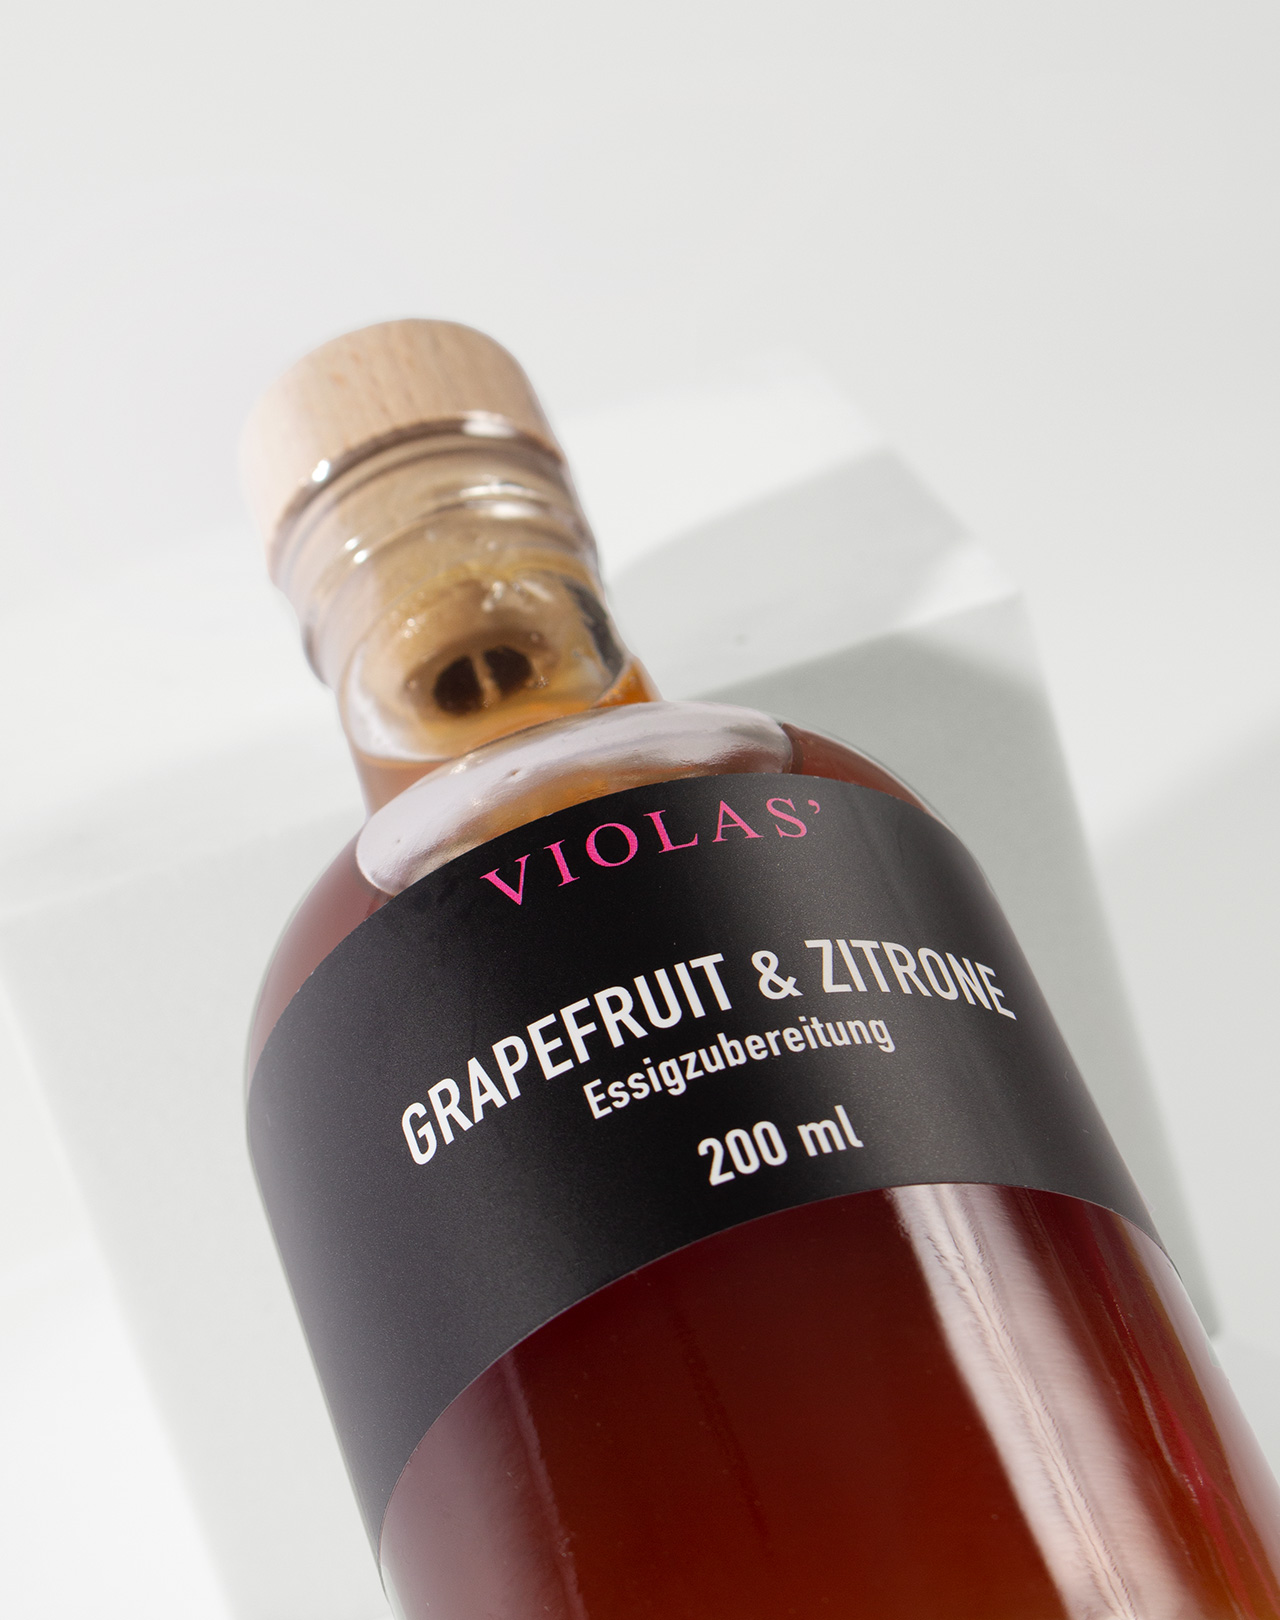 VIOLAS’ Grapefruit & Zitrone